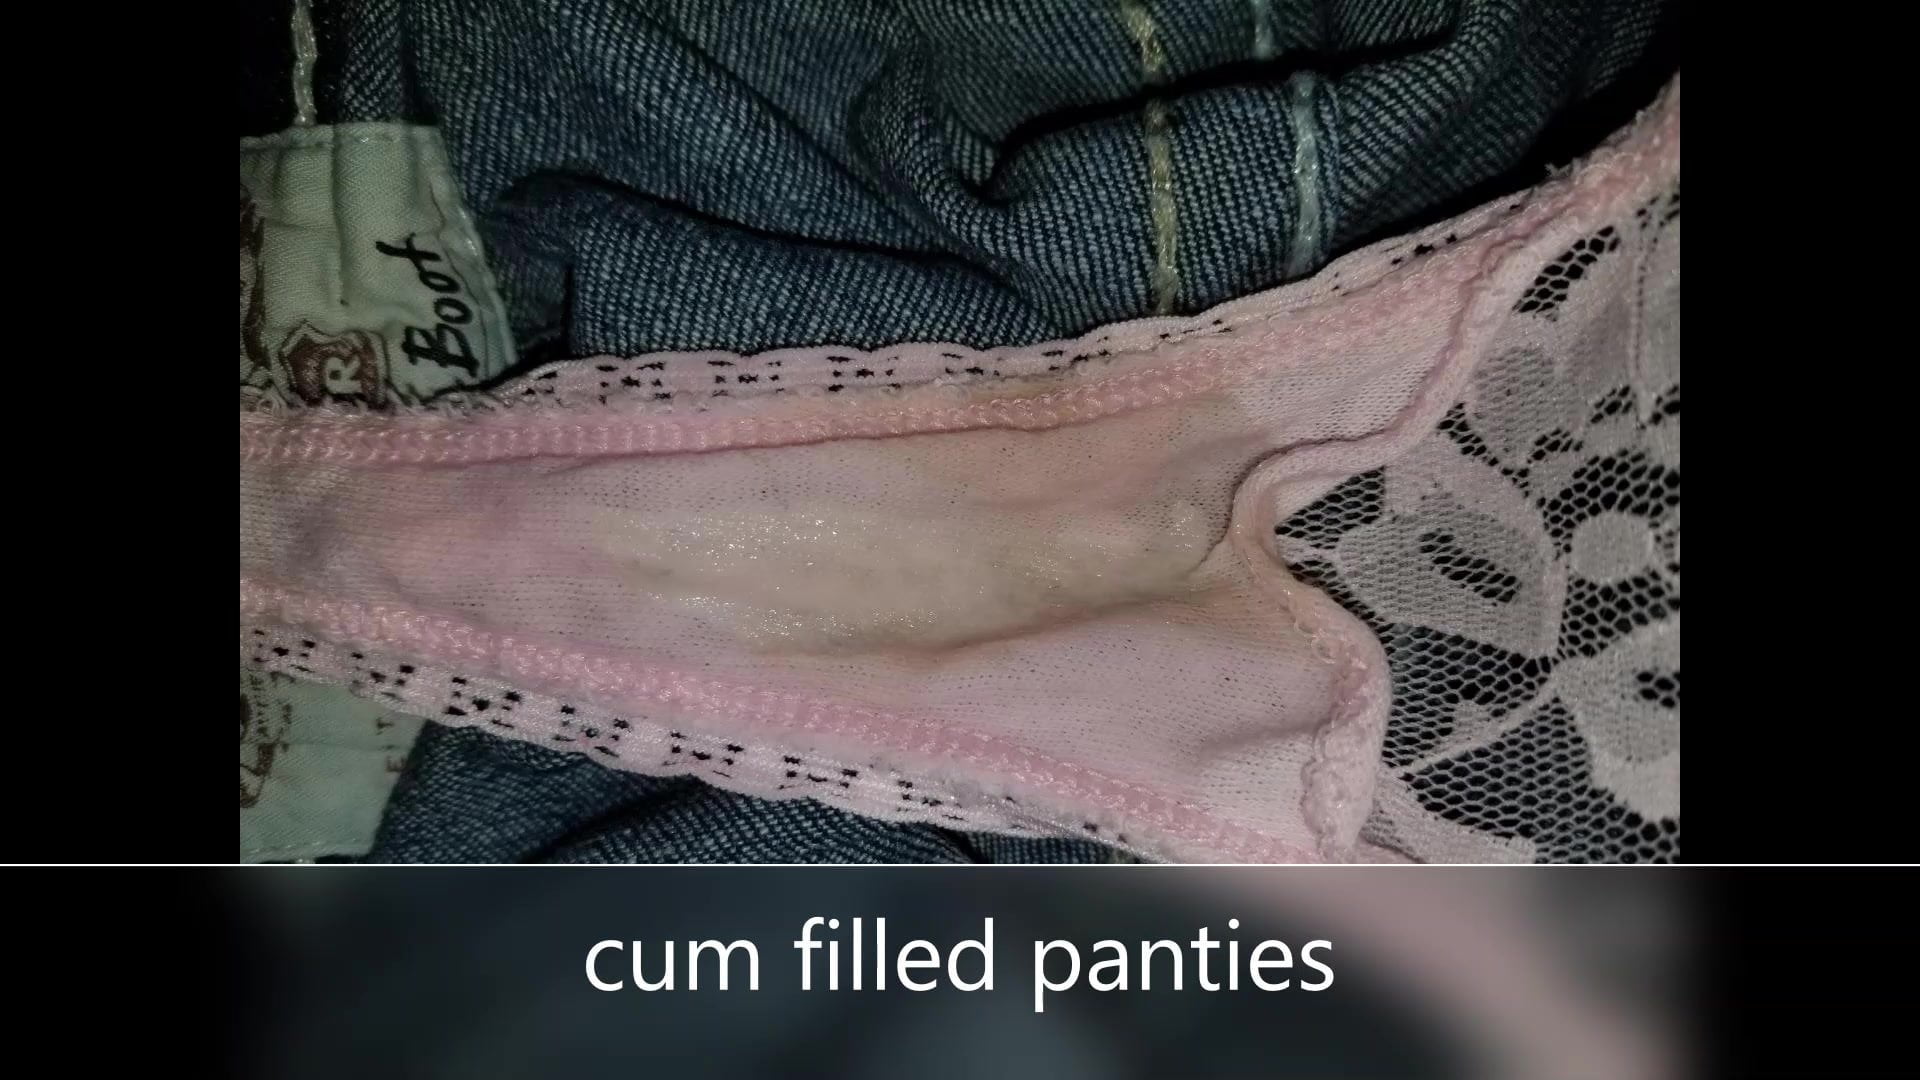 wife brings home cum filled panties